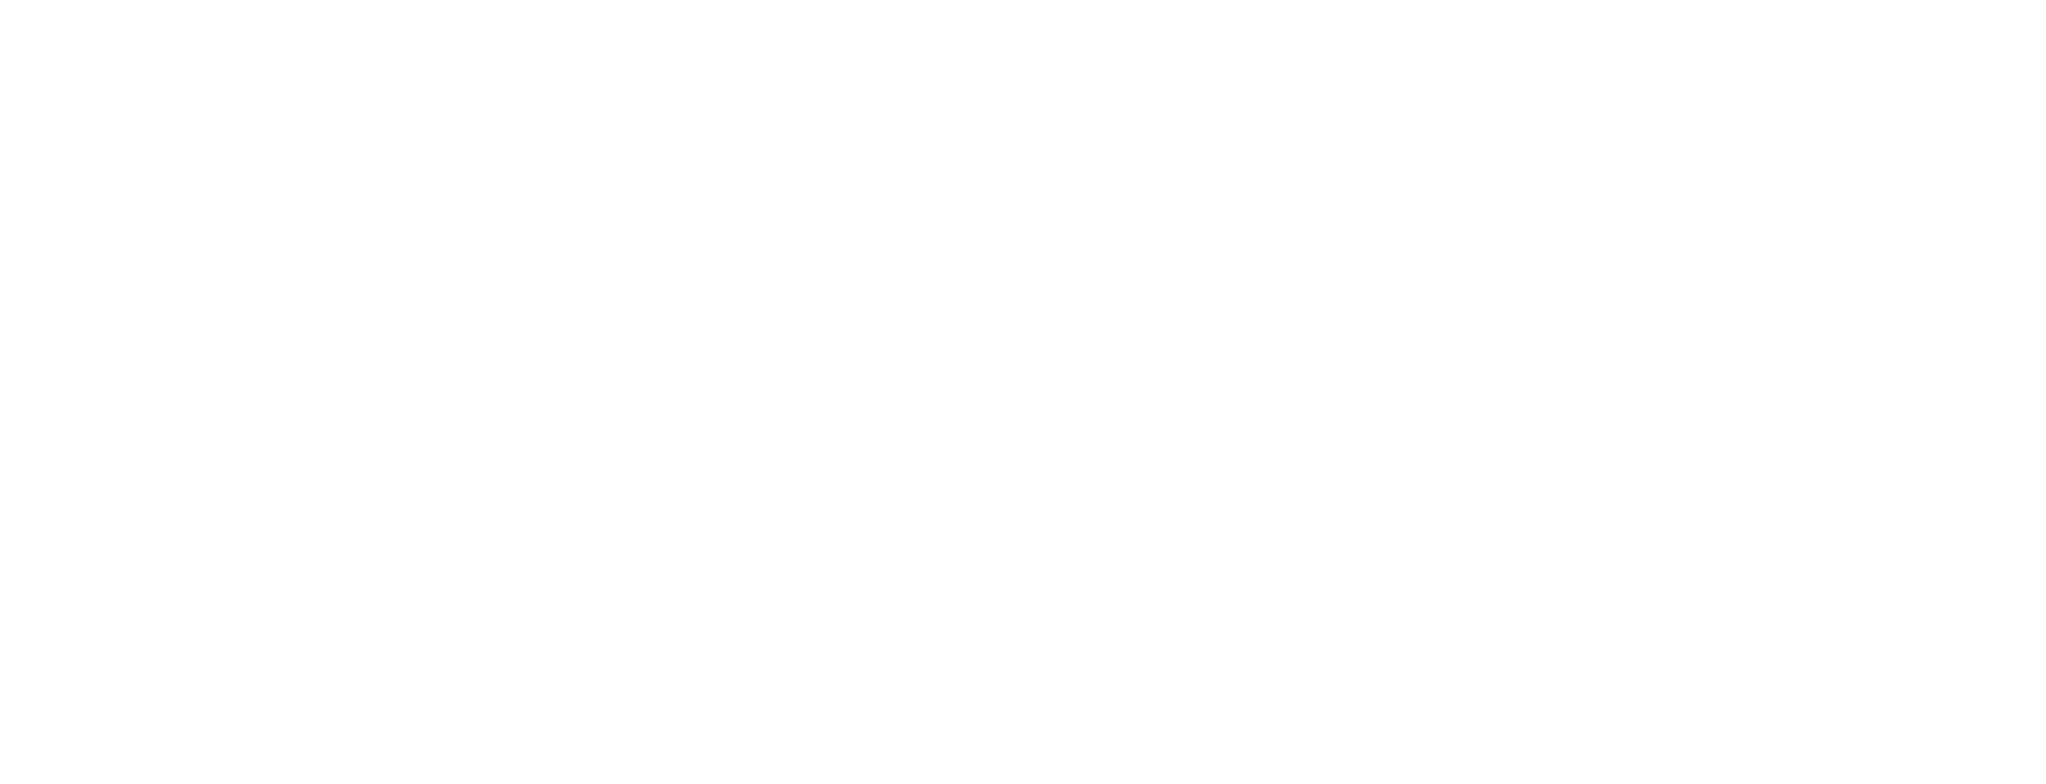 CNCDA - República Portuguesa